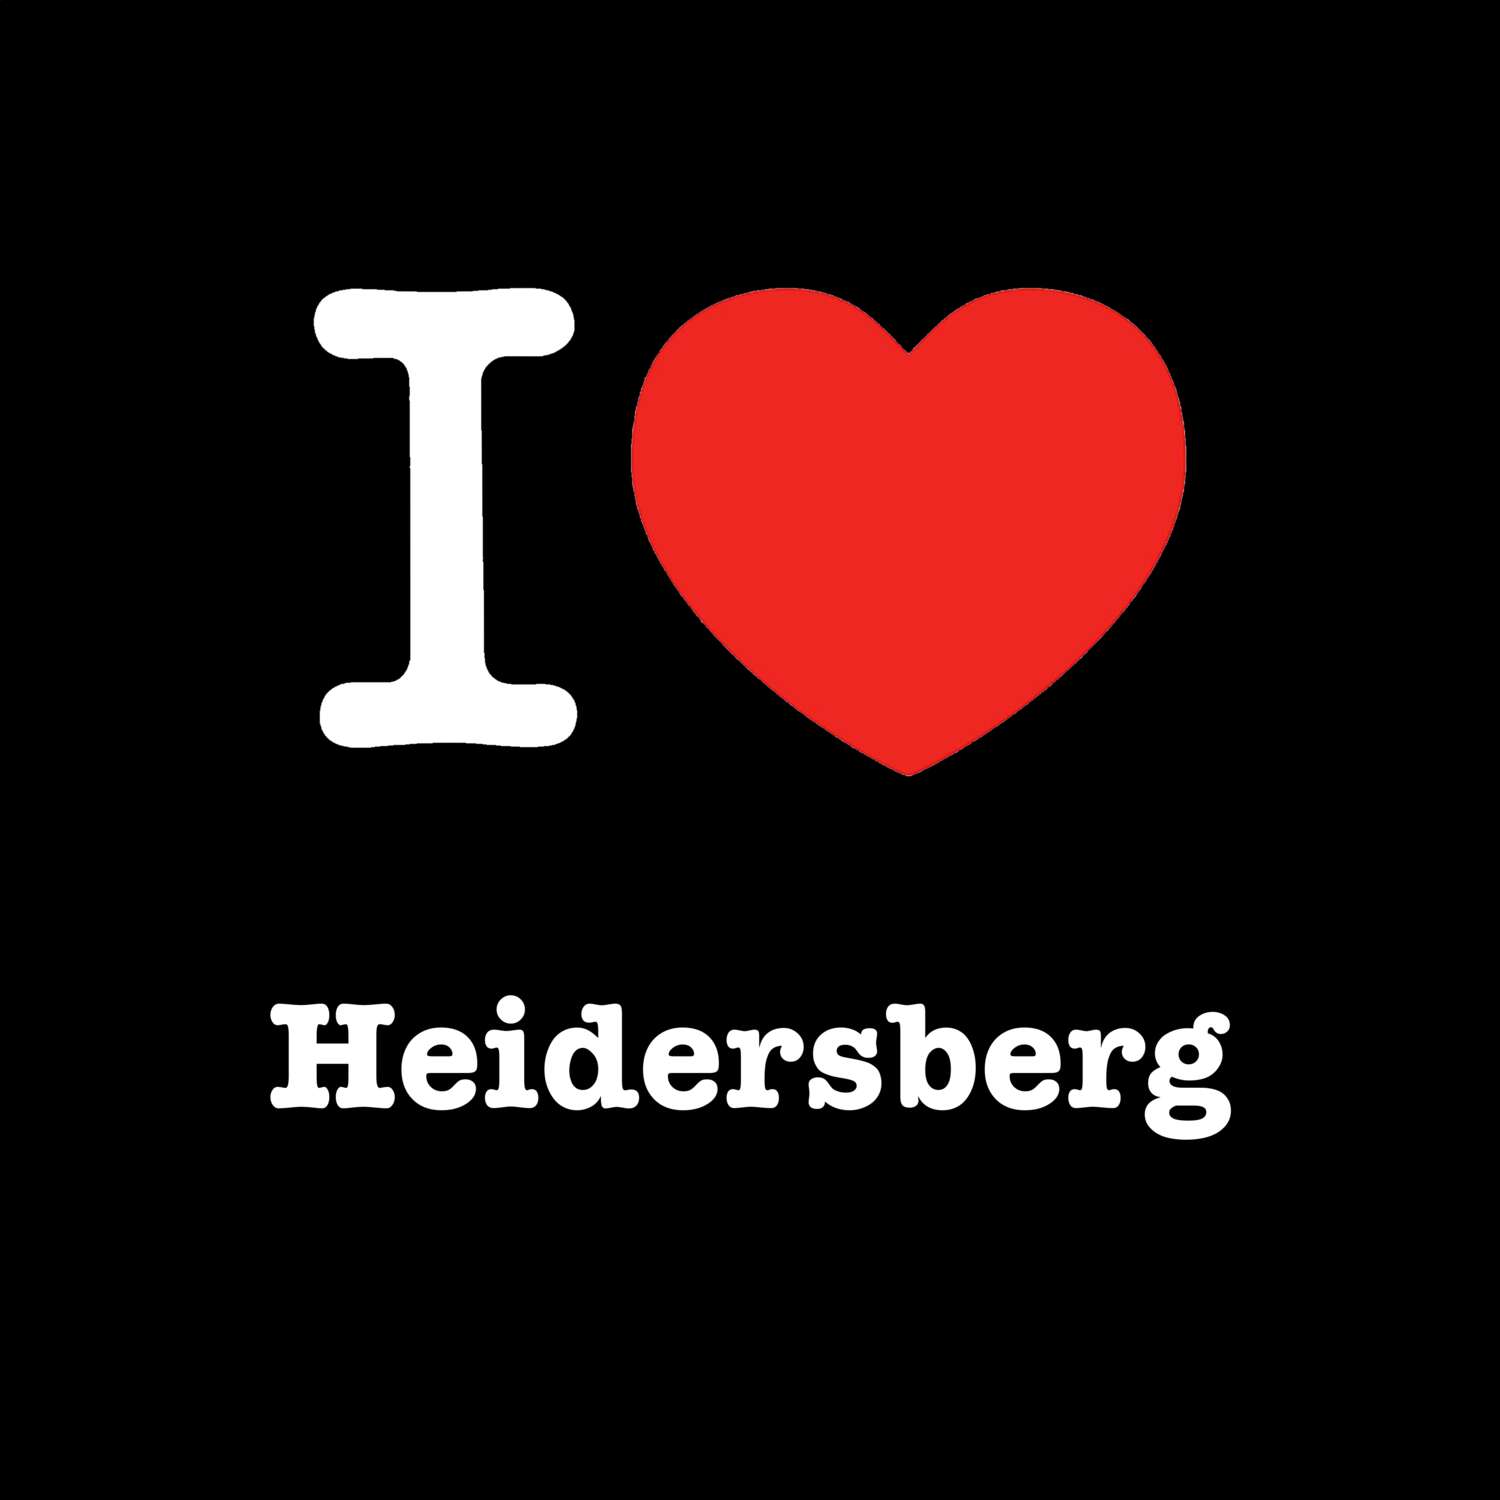 Heidersberg T-Shirt »I love«